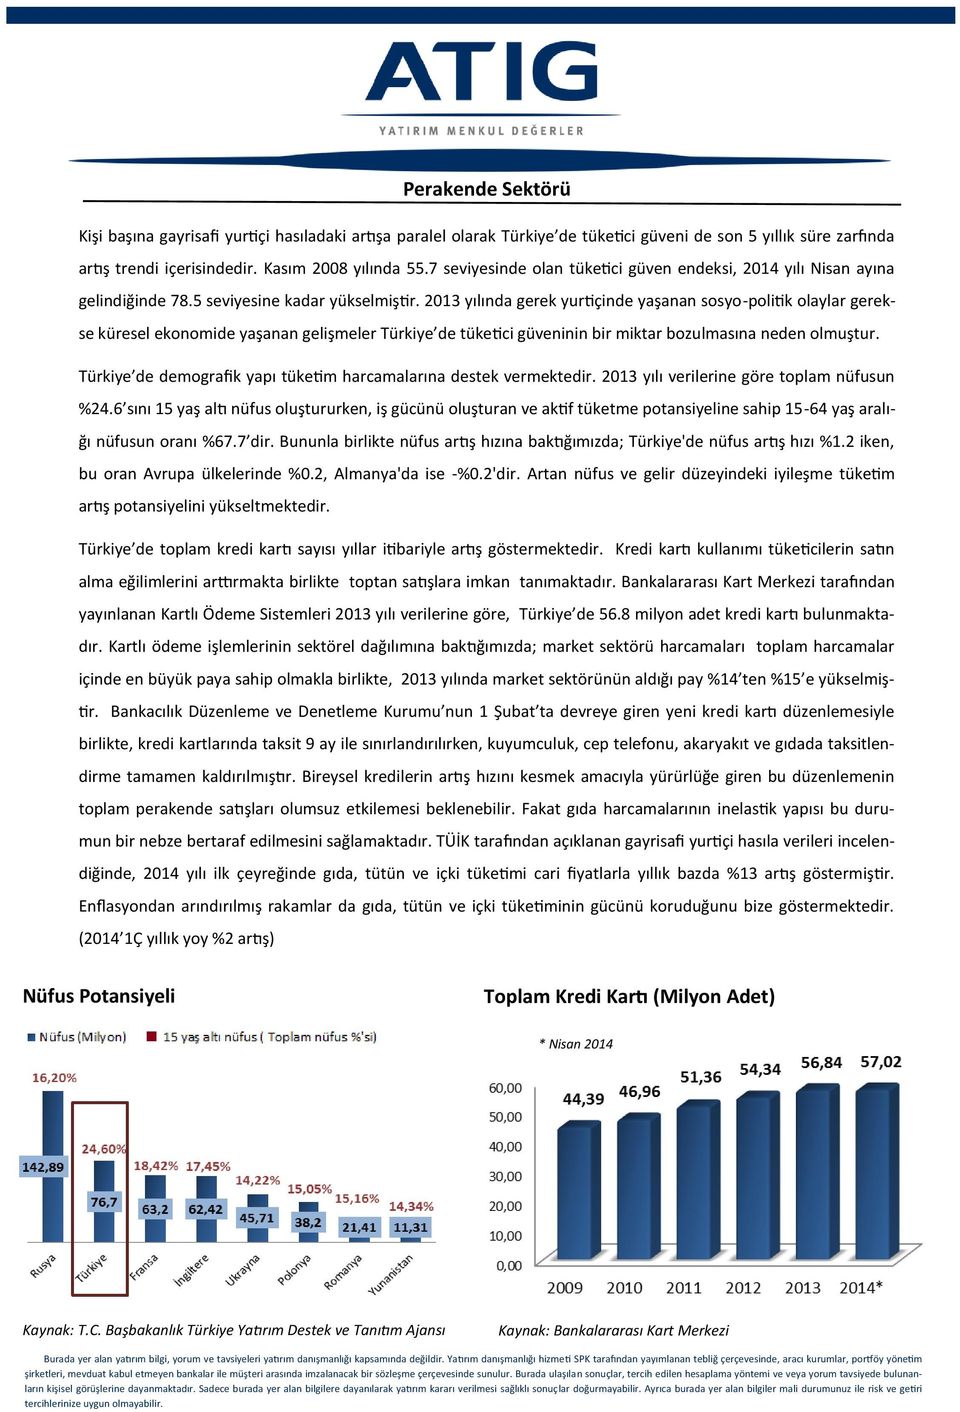 2013 yılında gerek yurtiçinde yaşanan sosyo-politik olaylar gerekse küresel ekonomide yaşanan gelişmeler Türkiye de tüketici güveninin bir miktar bozulmasına neden olmuştur.